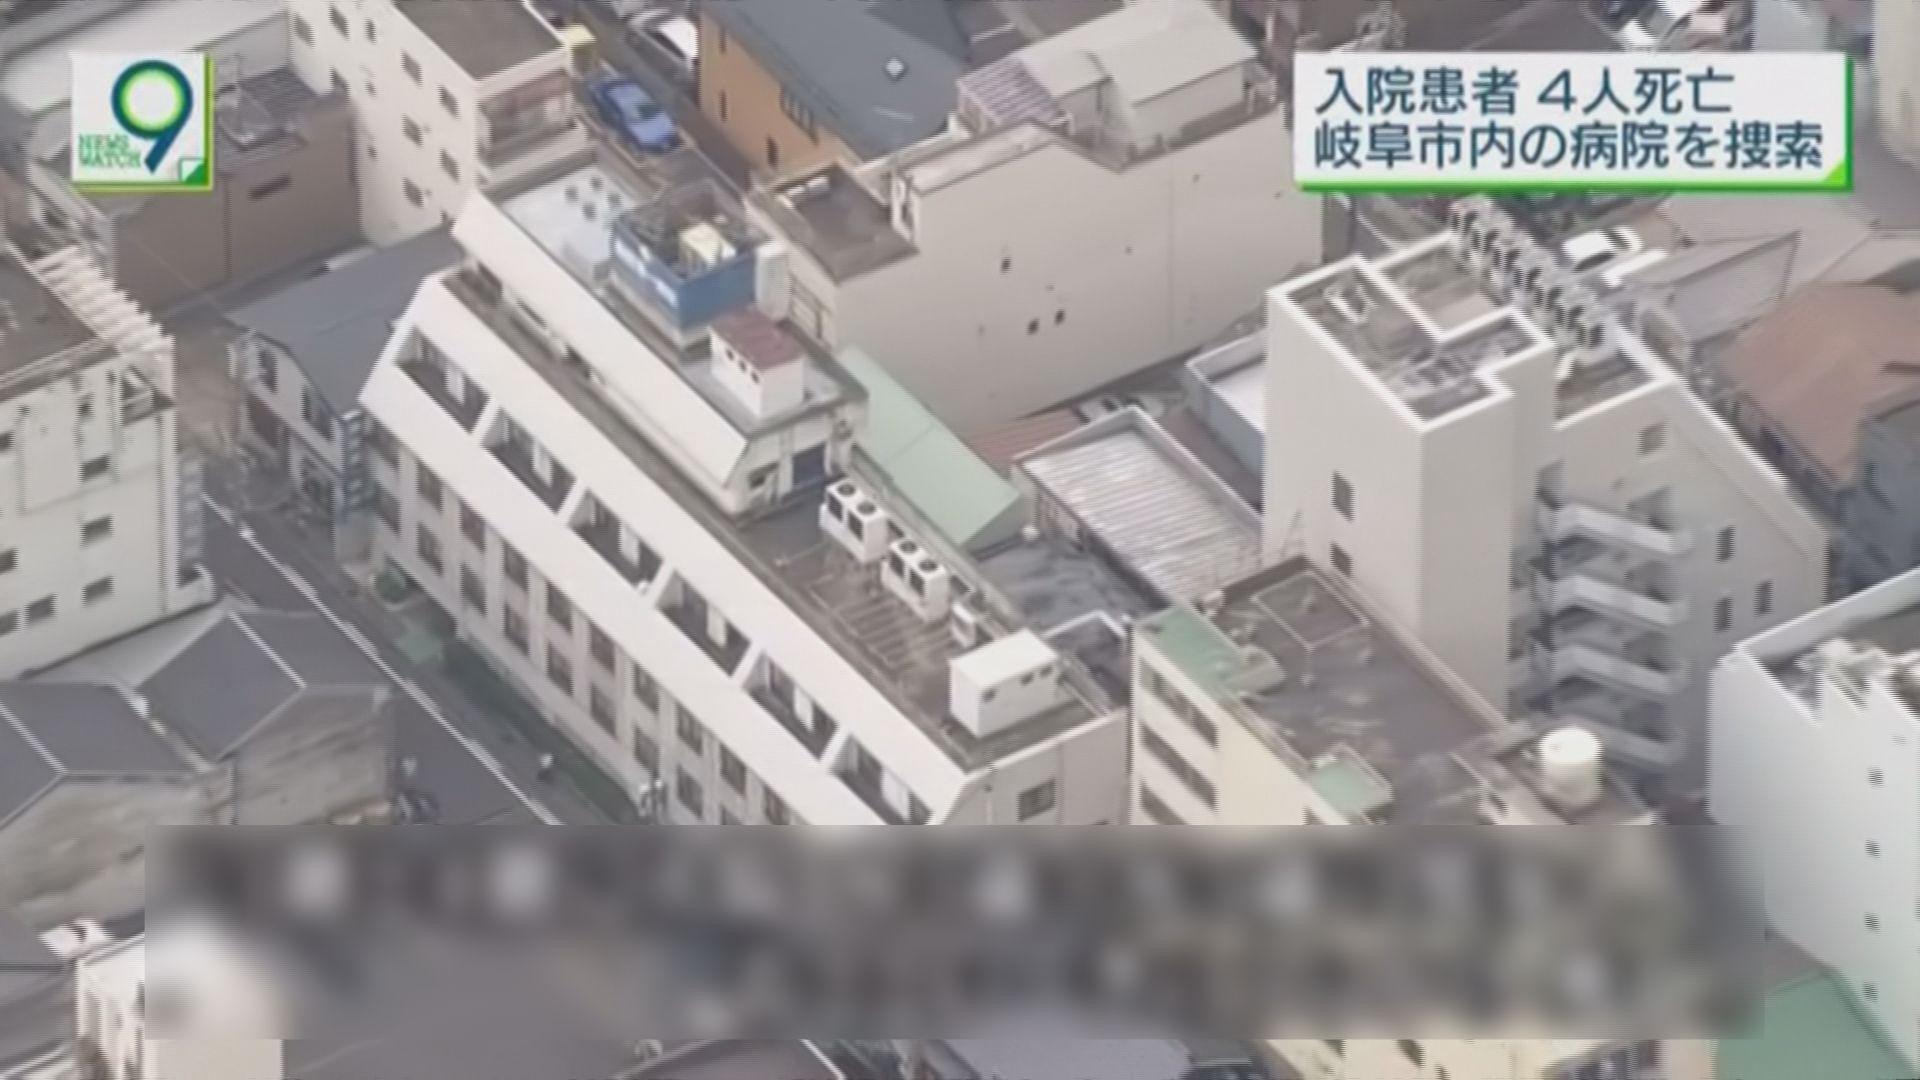 日本醫院空調故障釀五死